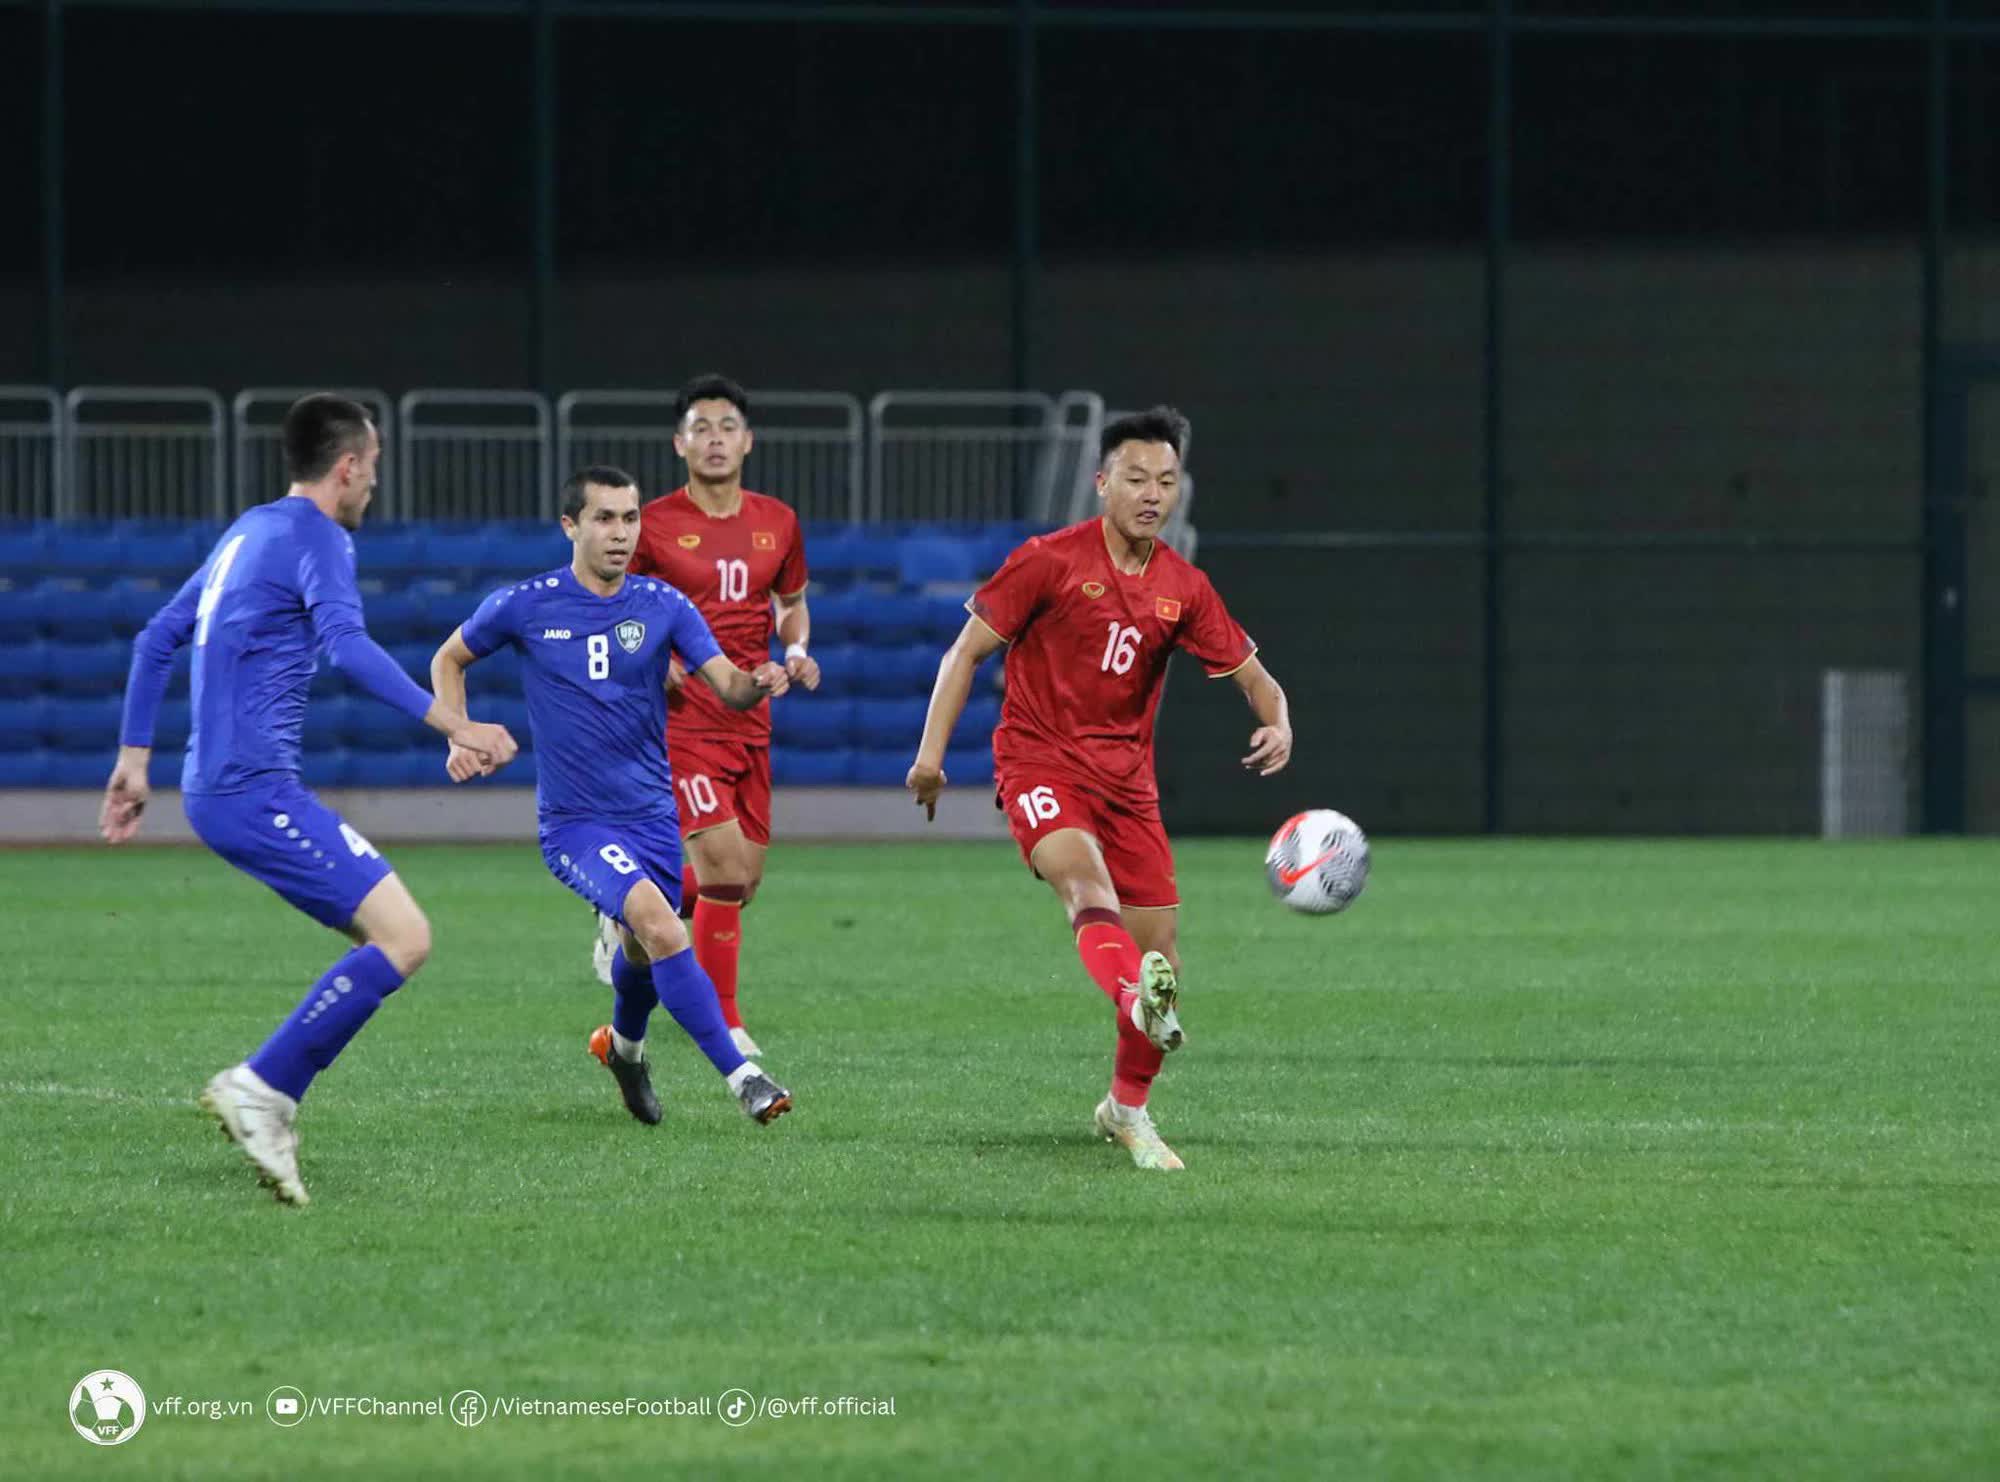 Thua liền hai trận, đội tuyển Việt Nam bất ngờ nhận tin vui từ FIFA  - Ảnh 1.